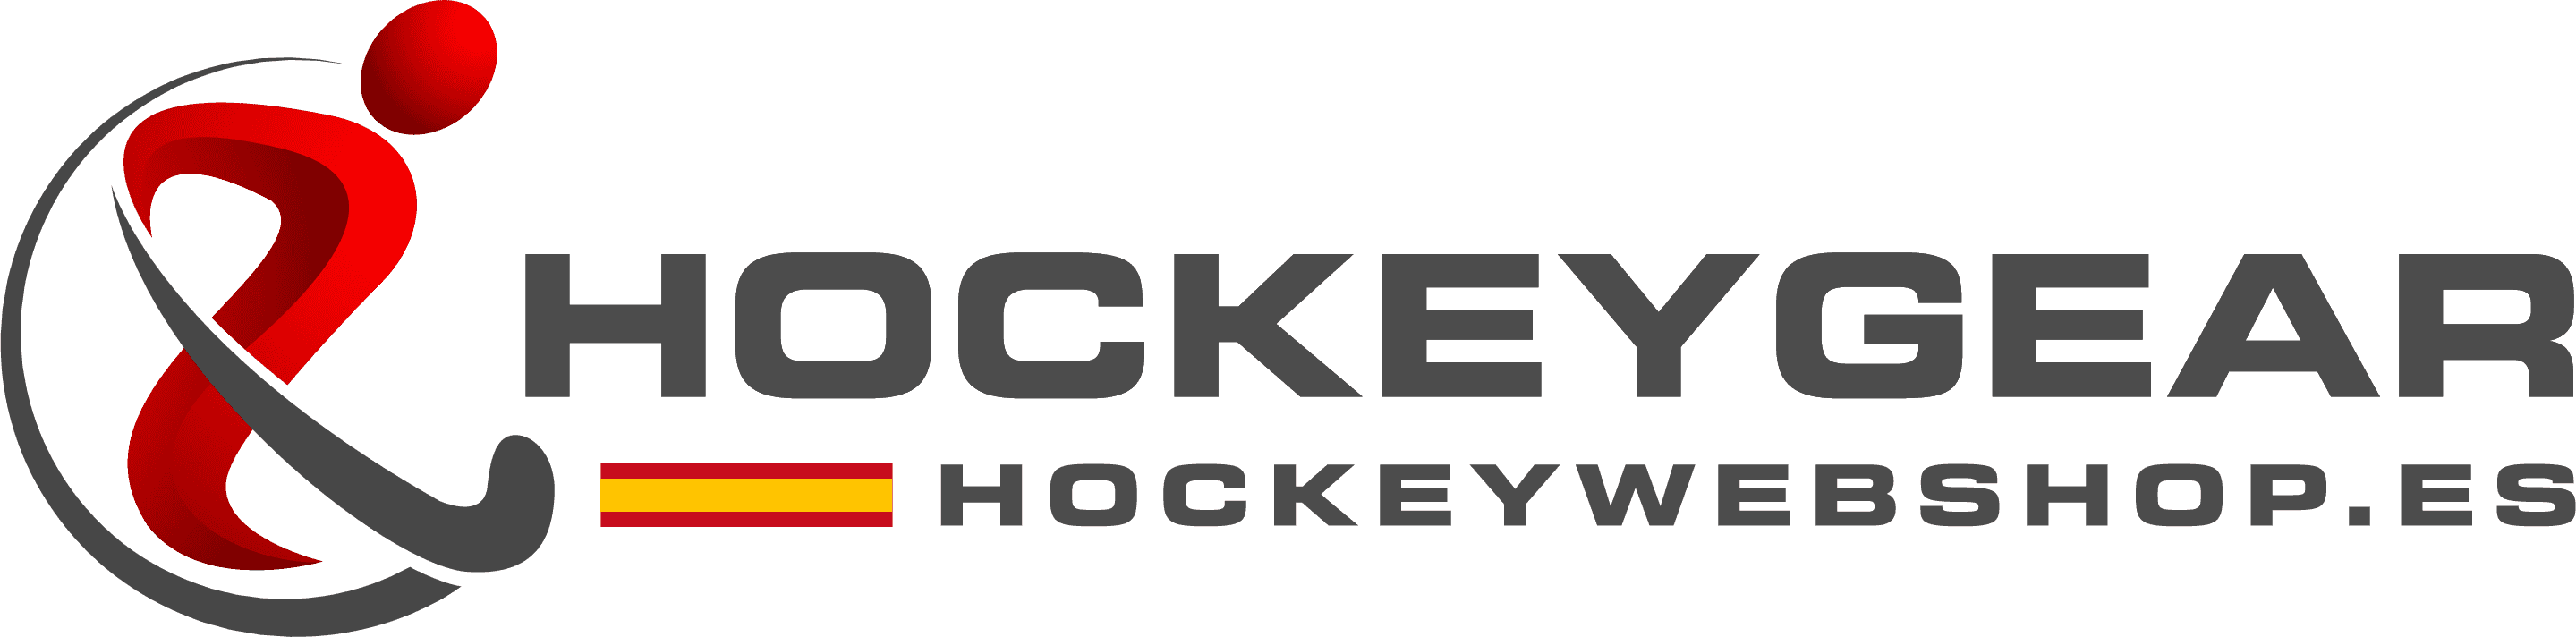 Λογότυπο Hockey es